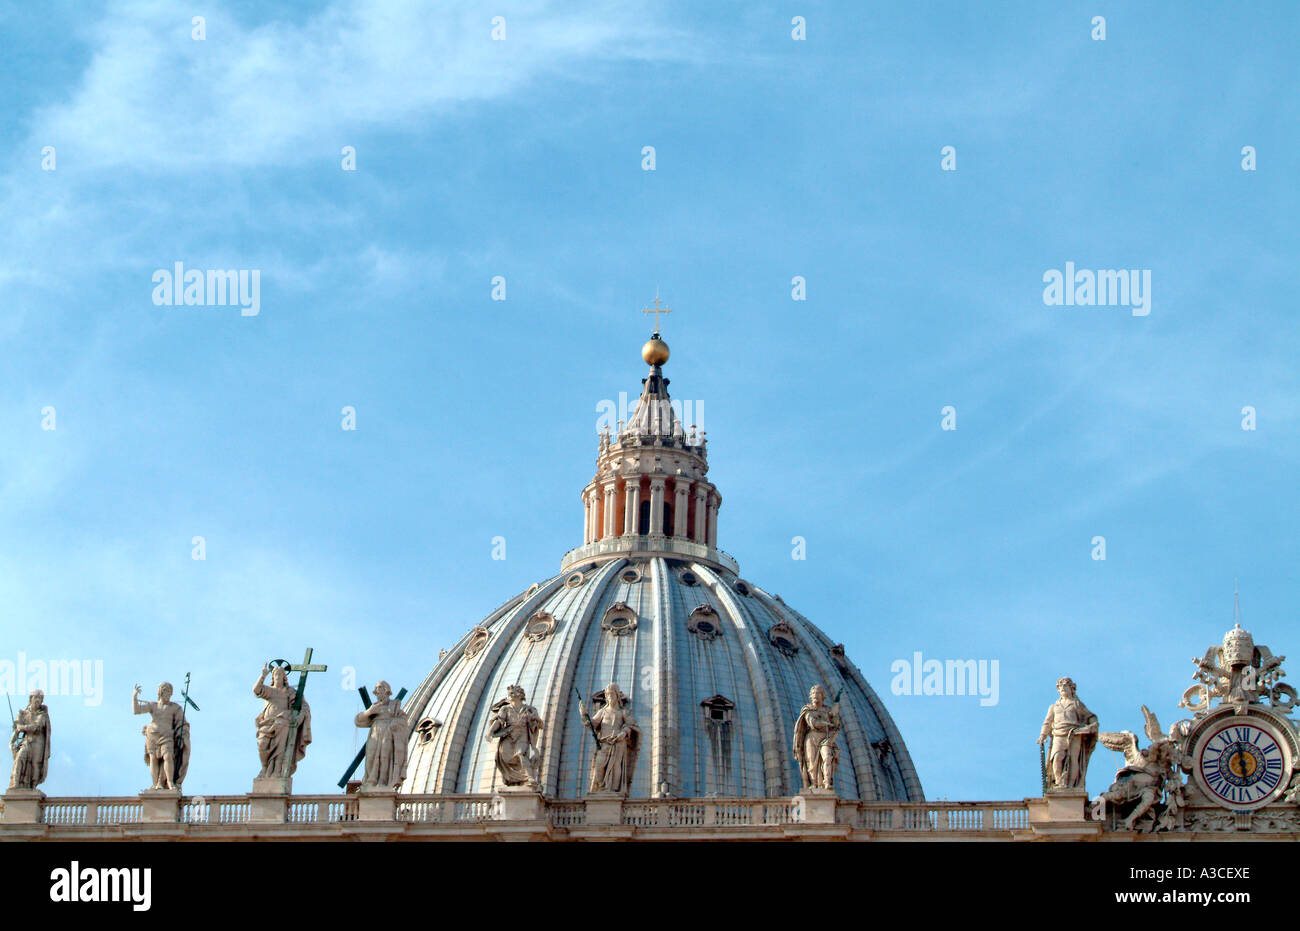 Spitze der Kuppel der St. Peters Basilika Vatikanstadt Rom Italien Stockfoto